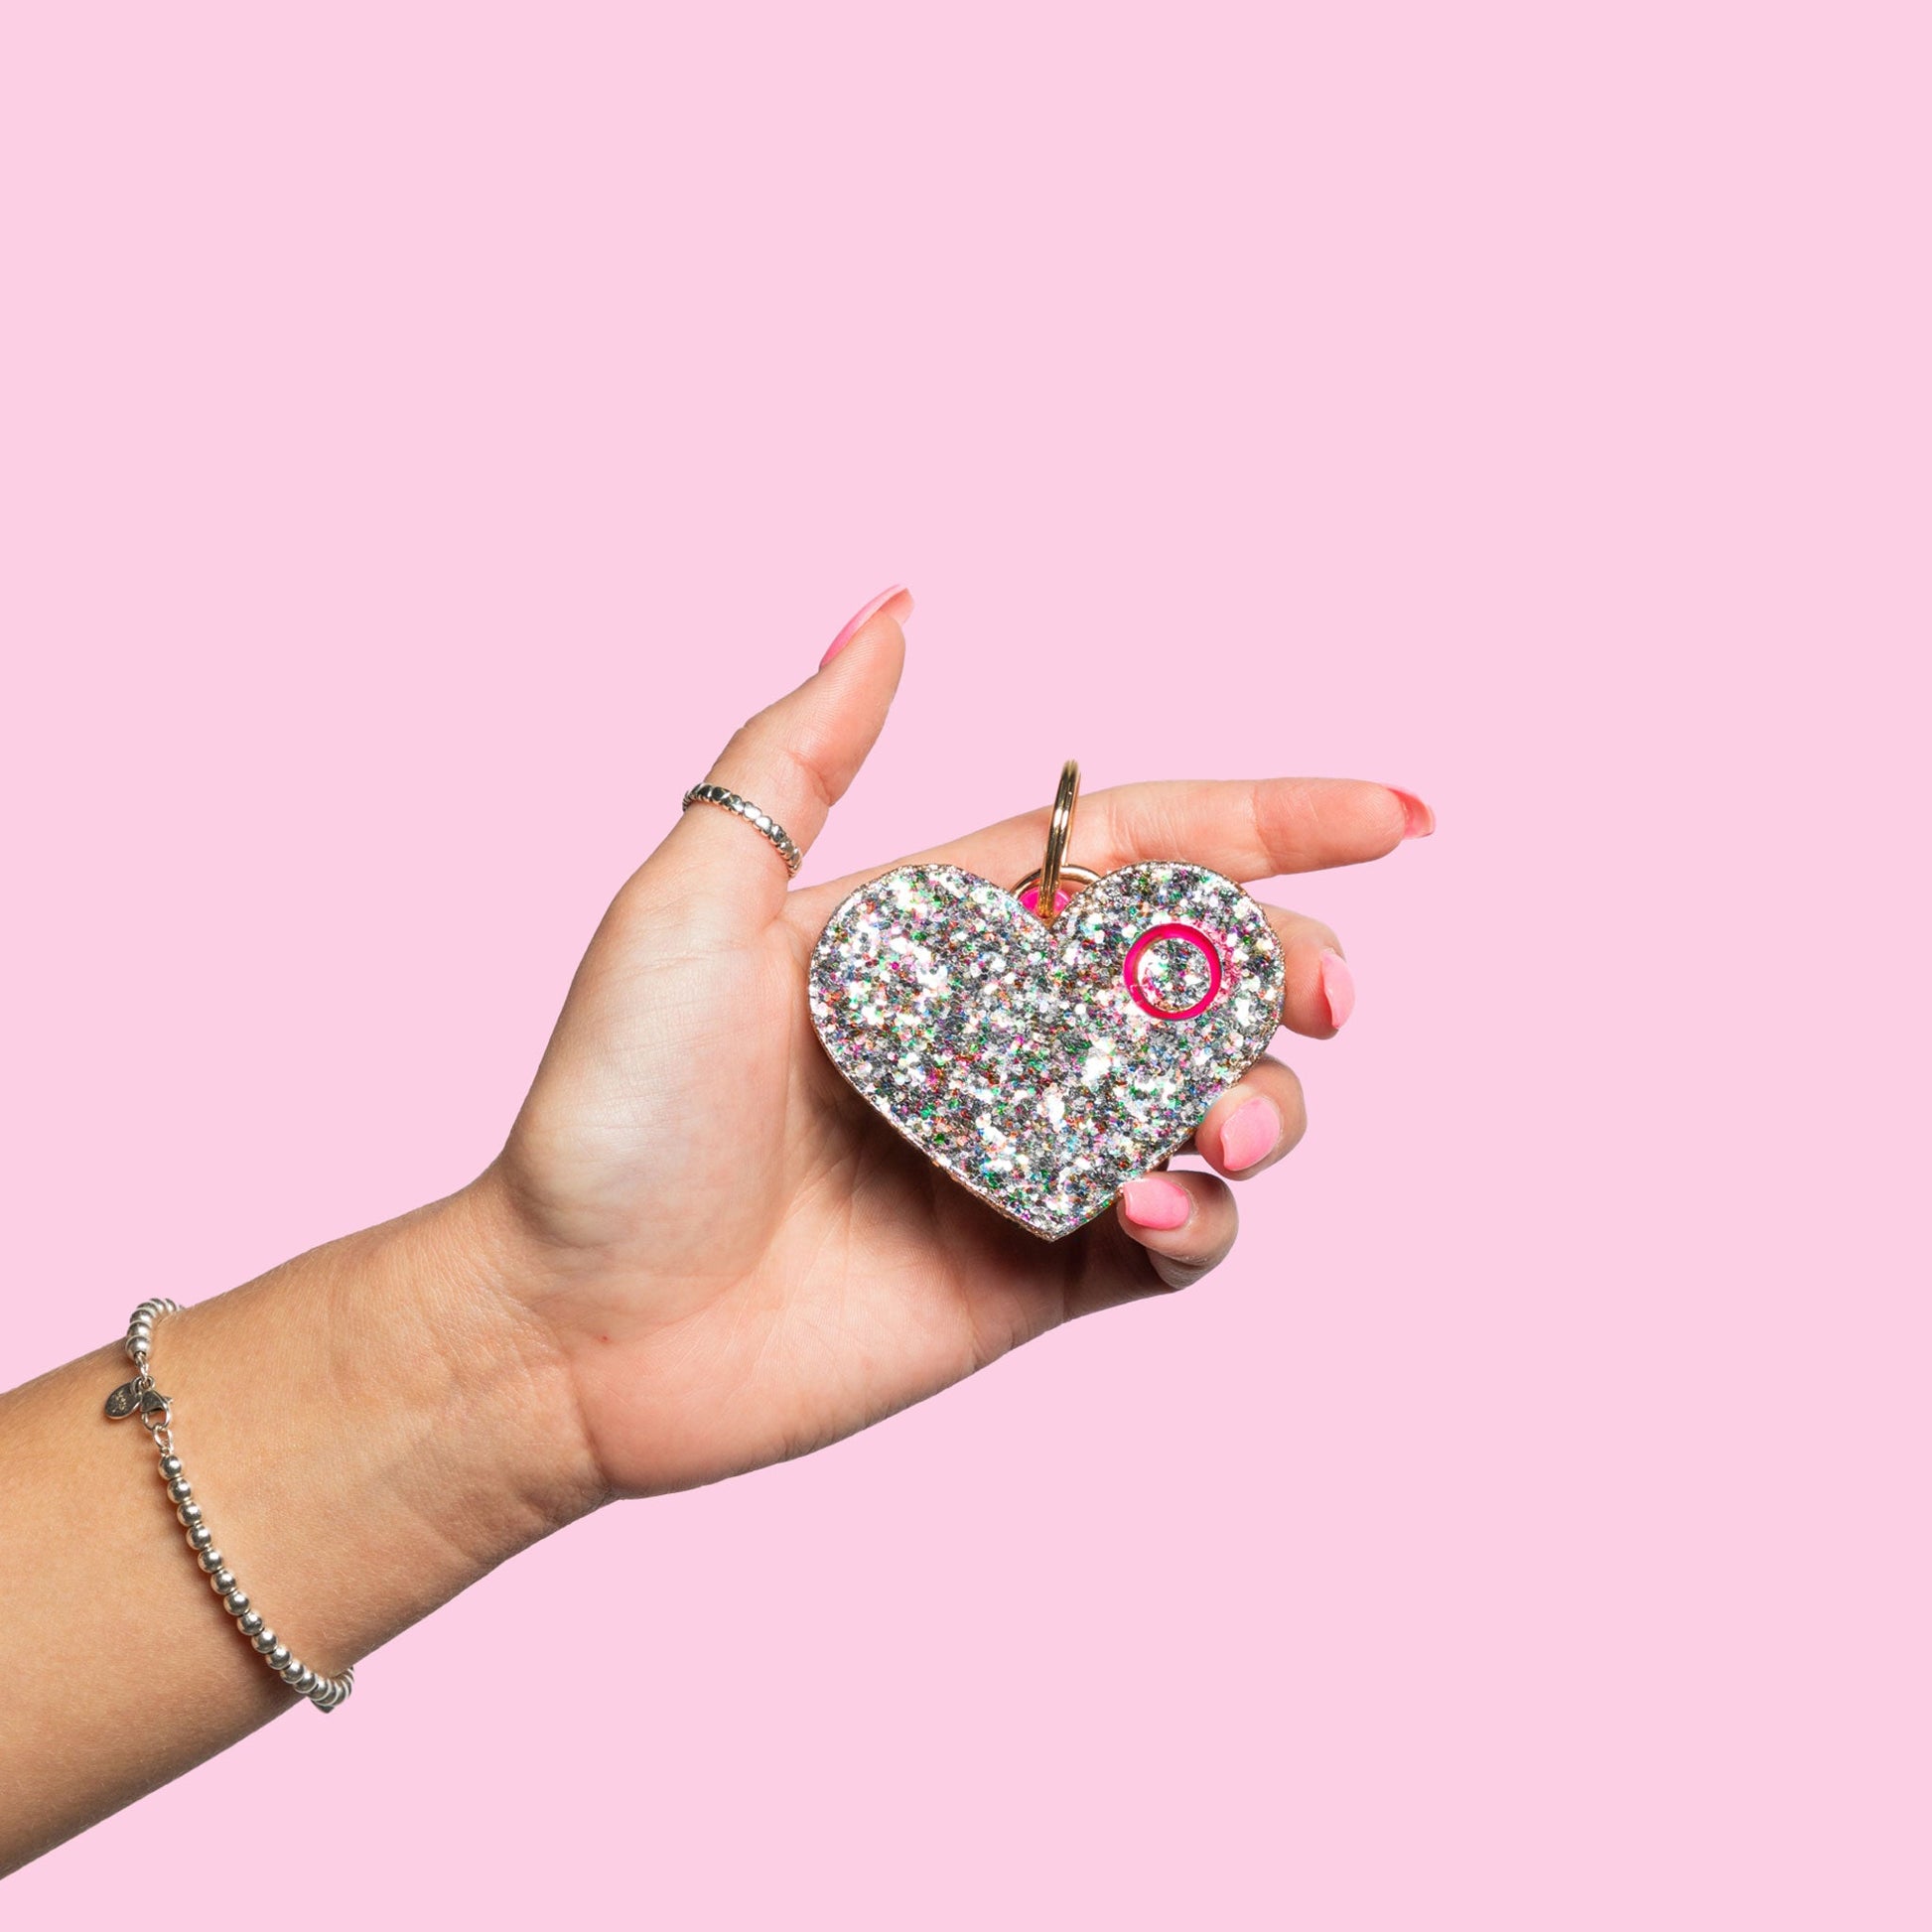 Safety Alarm | Confetti Glitter Heart